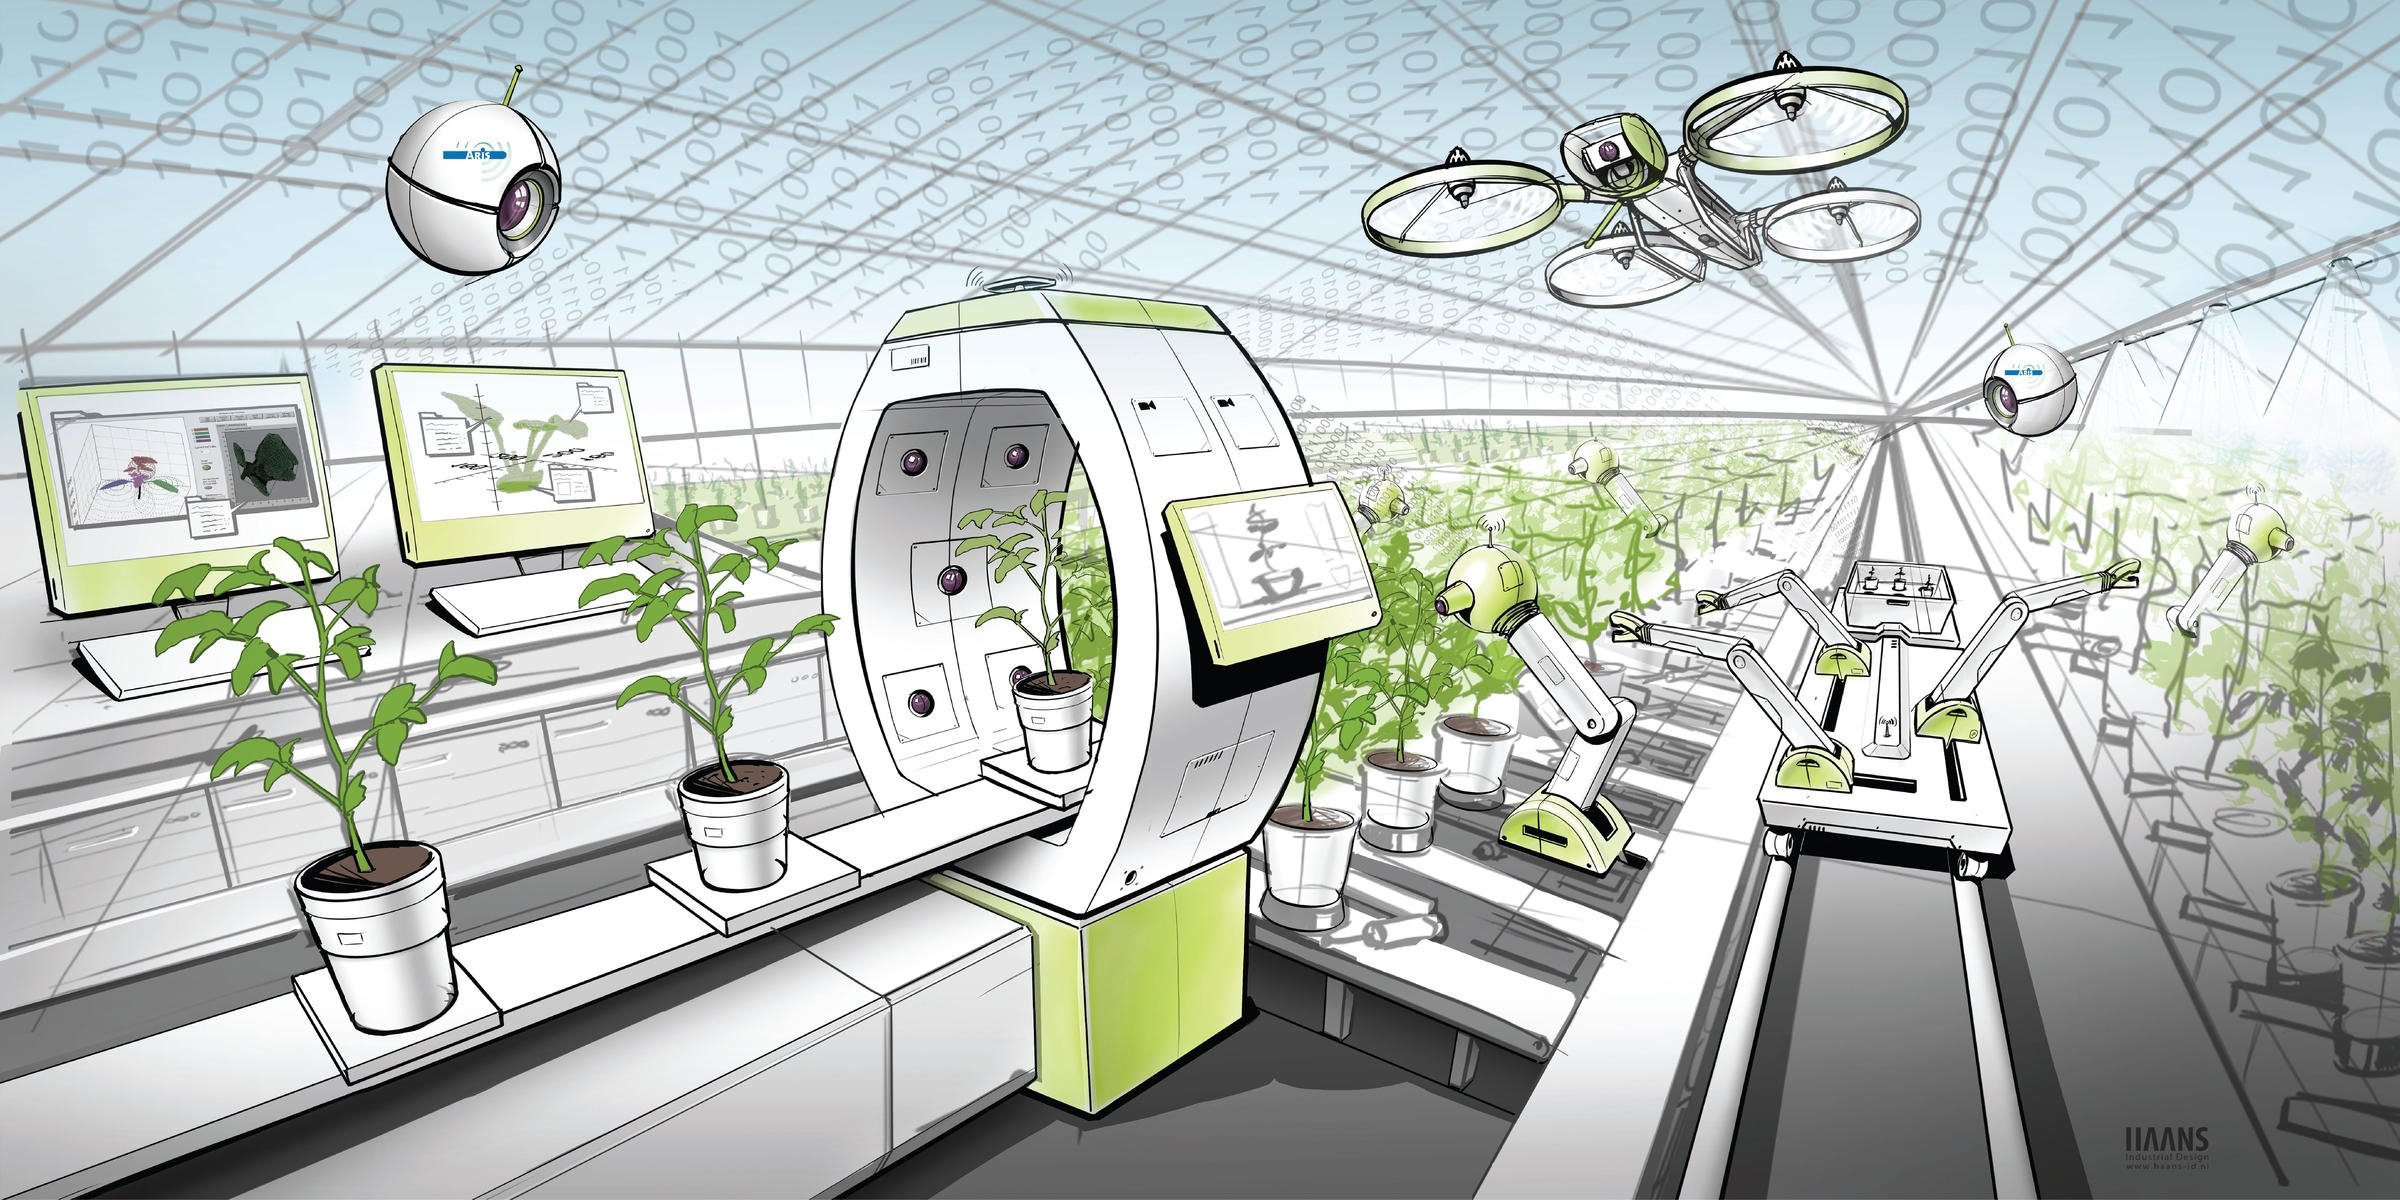 Будущее непрерывное. Биологическая лаборатория будущего. Школьные лаборатории будущего. Растения в будущем. Лаборатория в школе будущего.